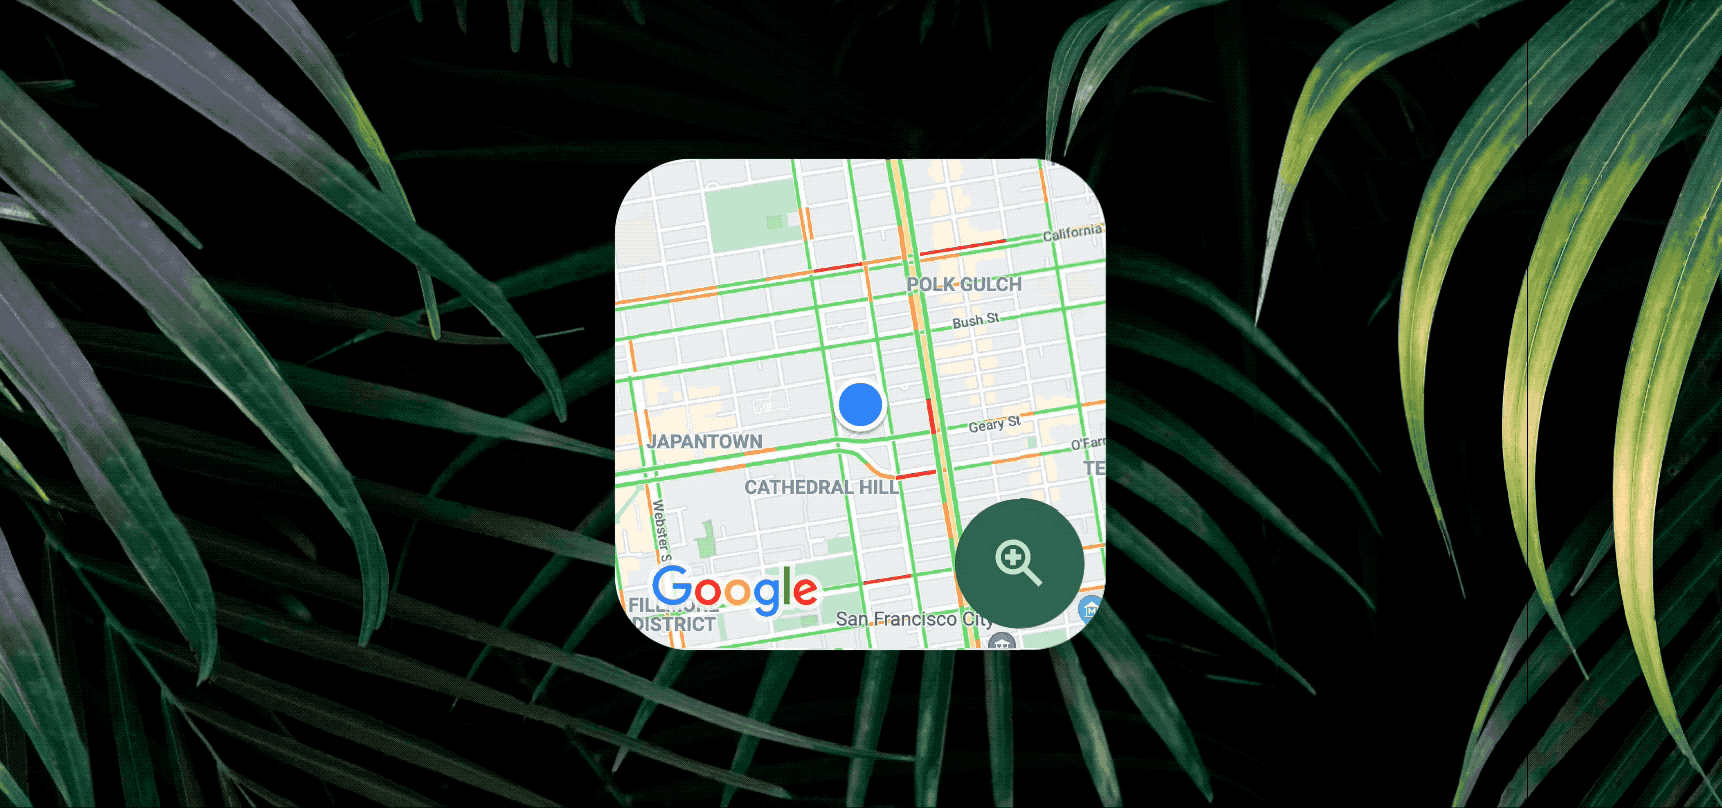 Google Maps sẽ giúp bạn tiết kiệm hàng giờ mỗi ngày